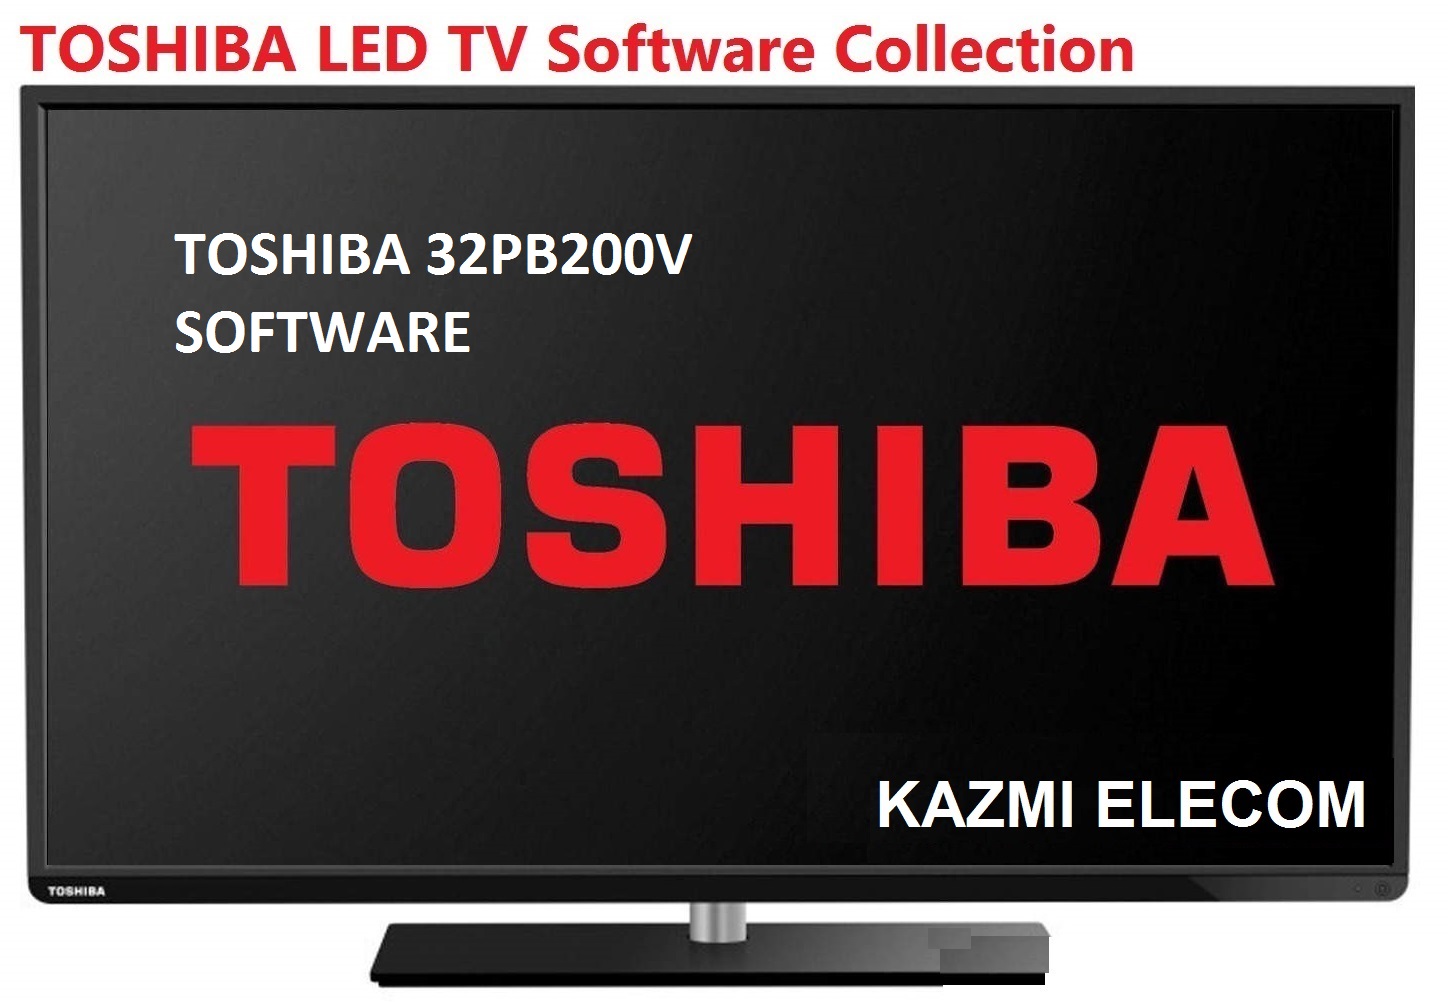 Toshiba 32Pb200V